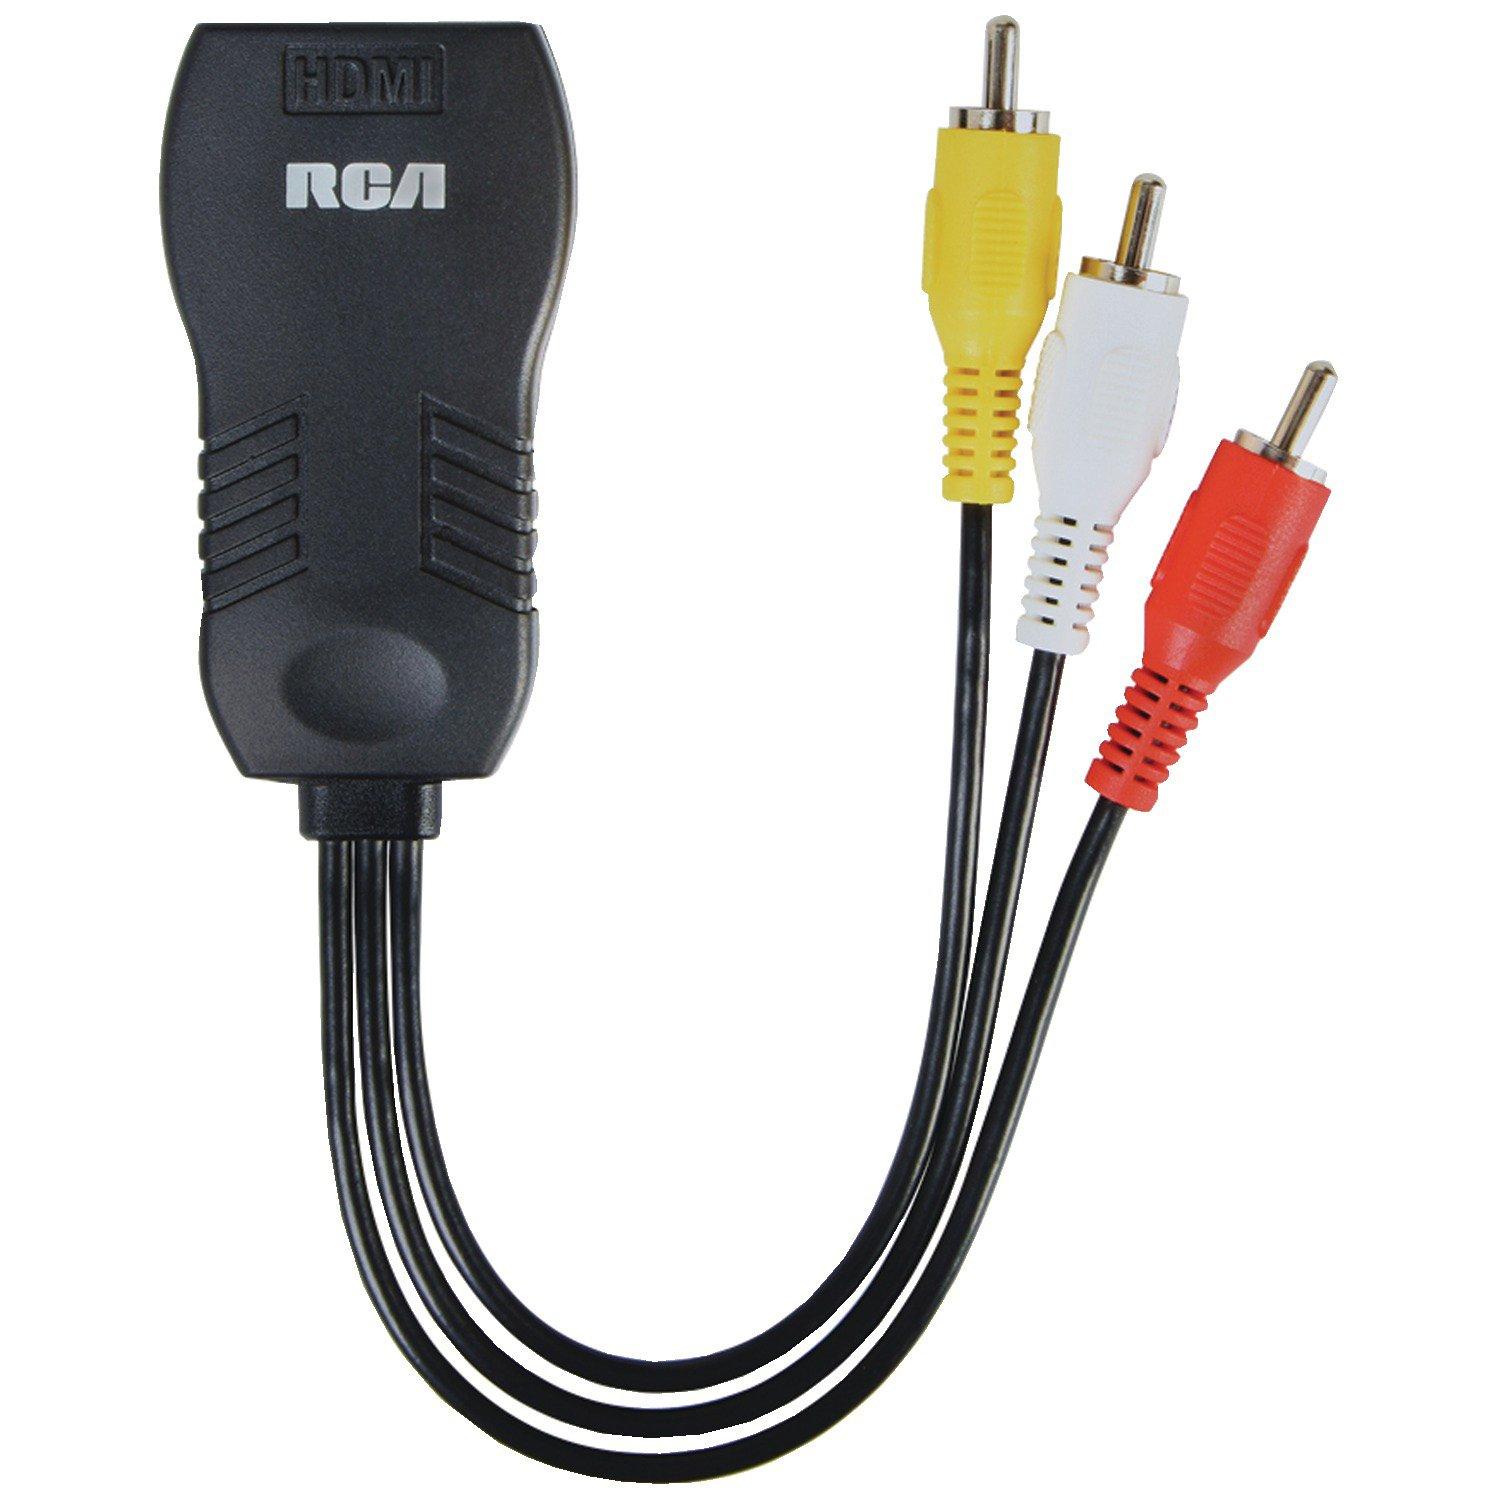 caos Rico Lanzamiento RCA Digital Plus HDMI to Composite Video Adapter | GameStop